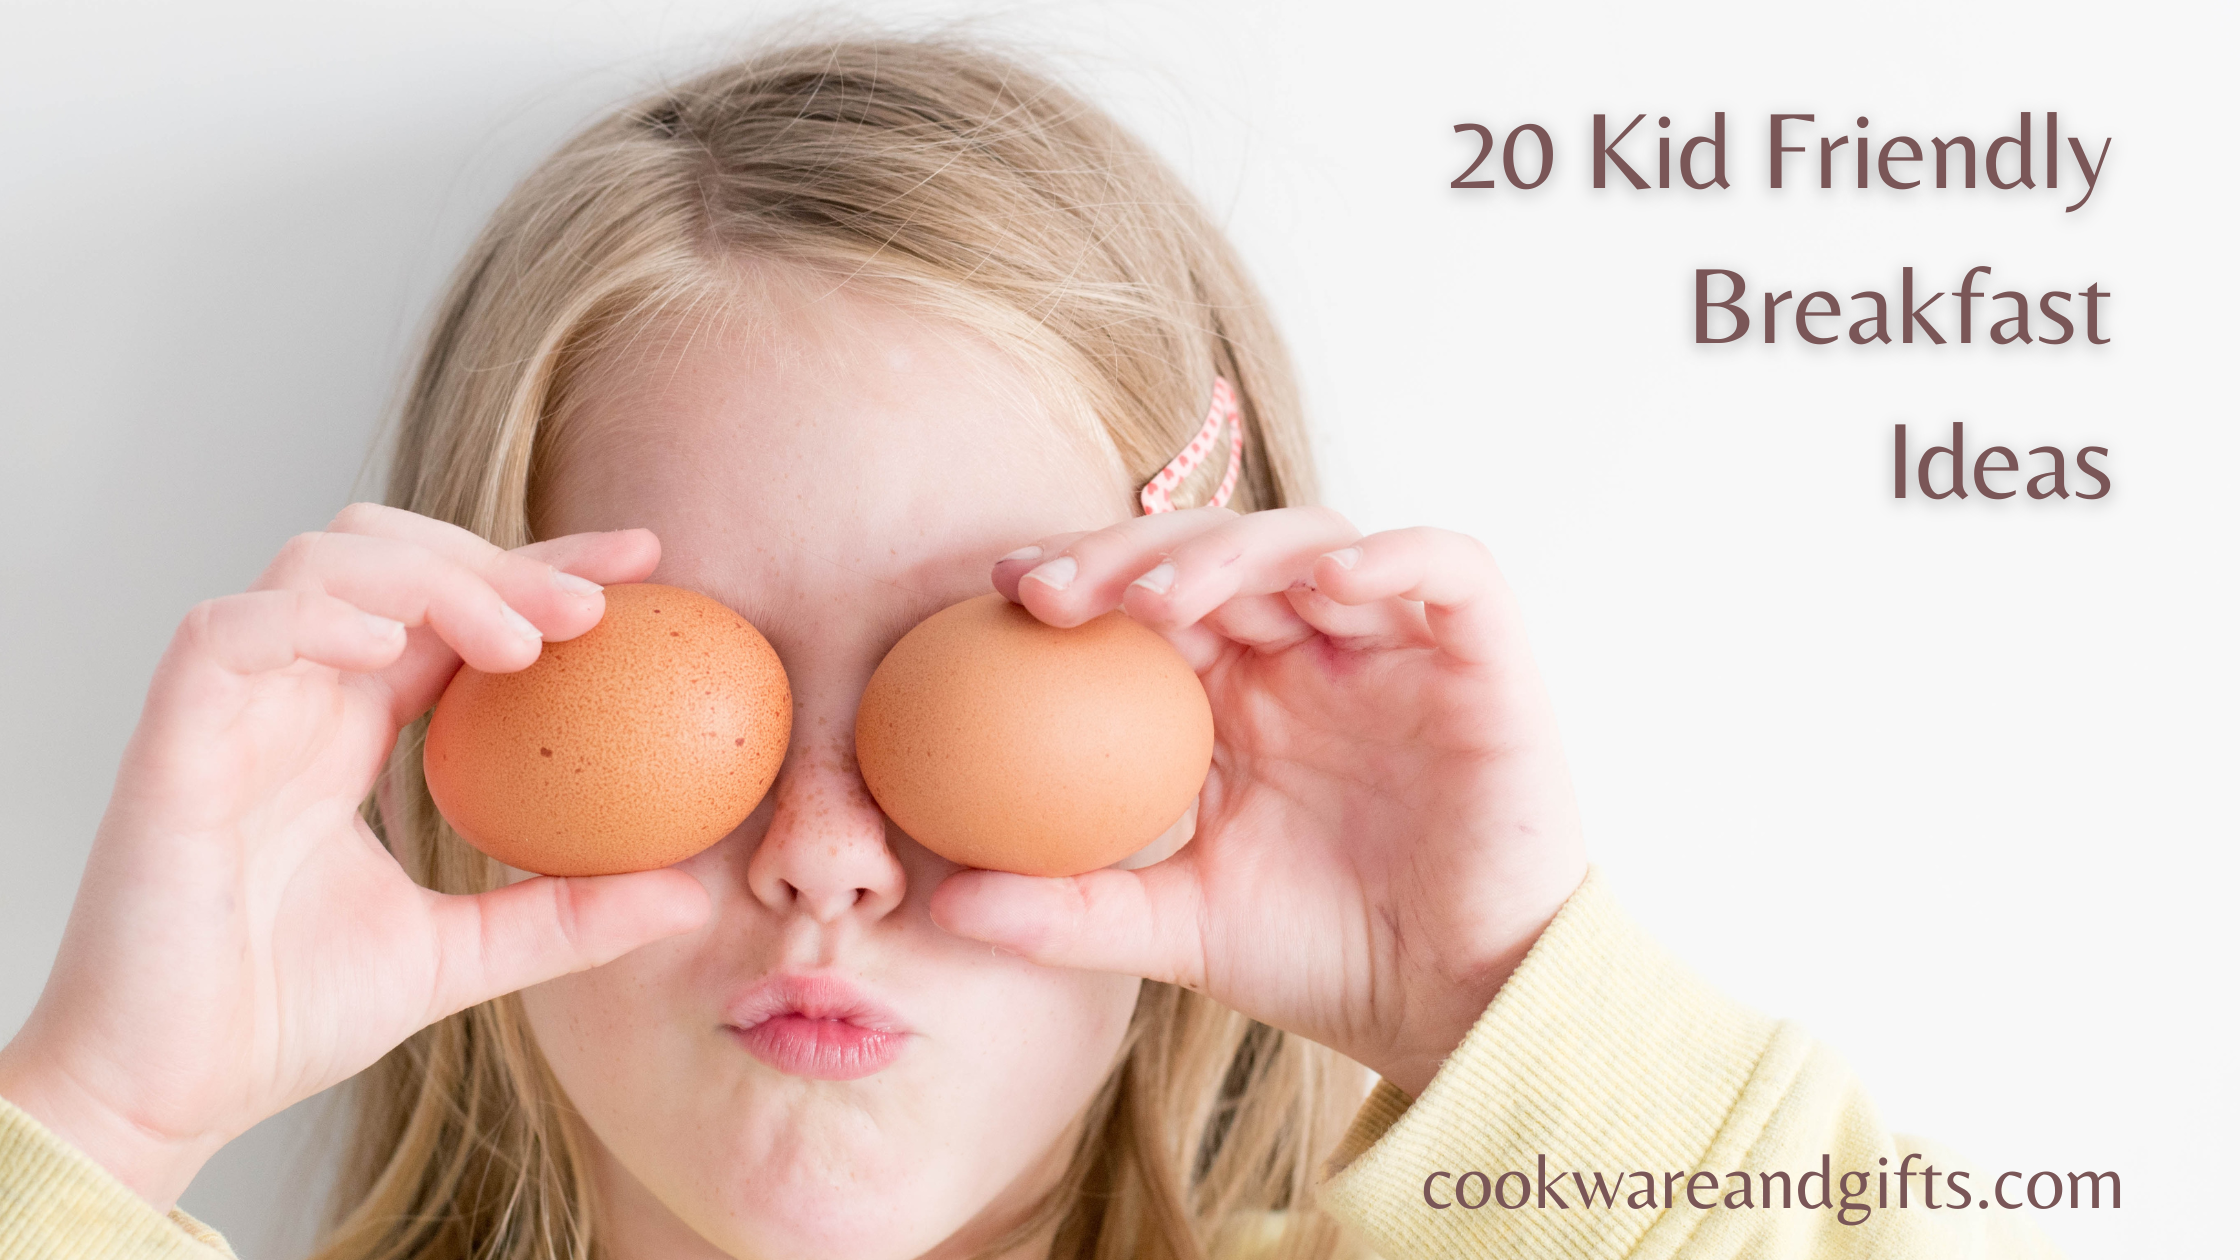 20 Kid Friendly Breakfast Ideas